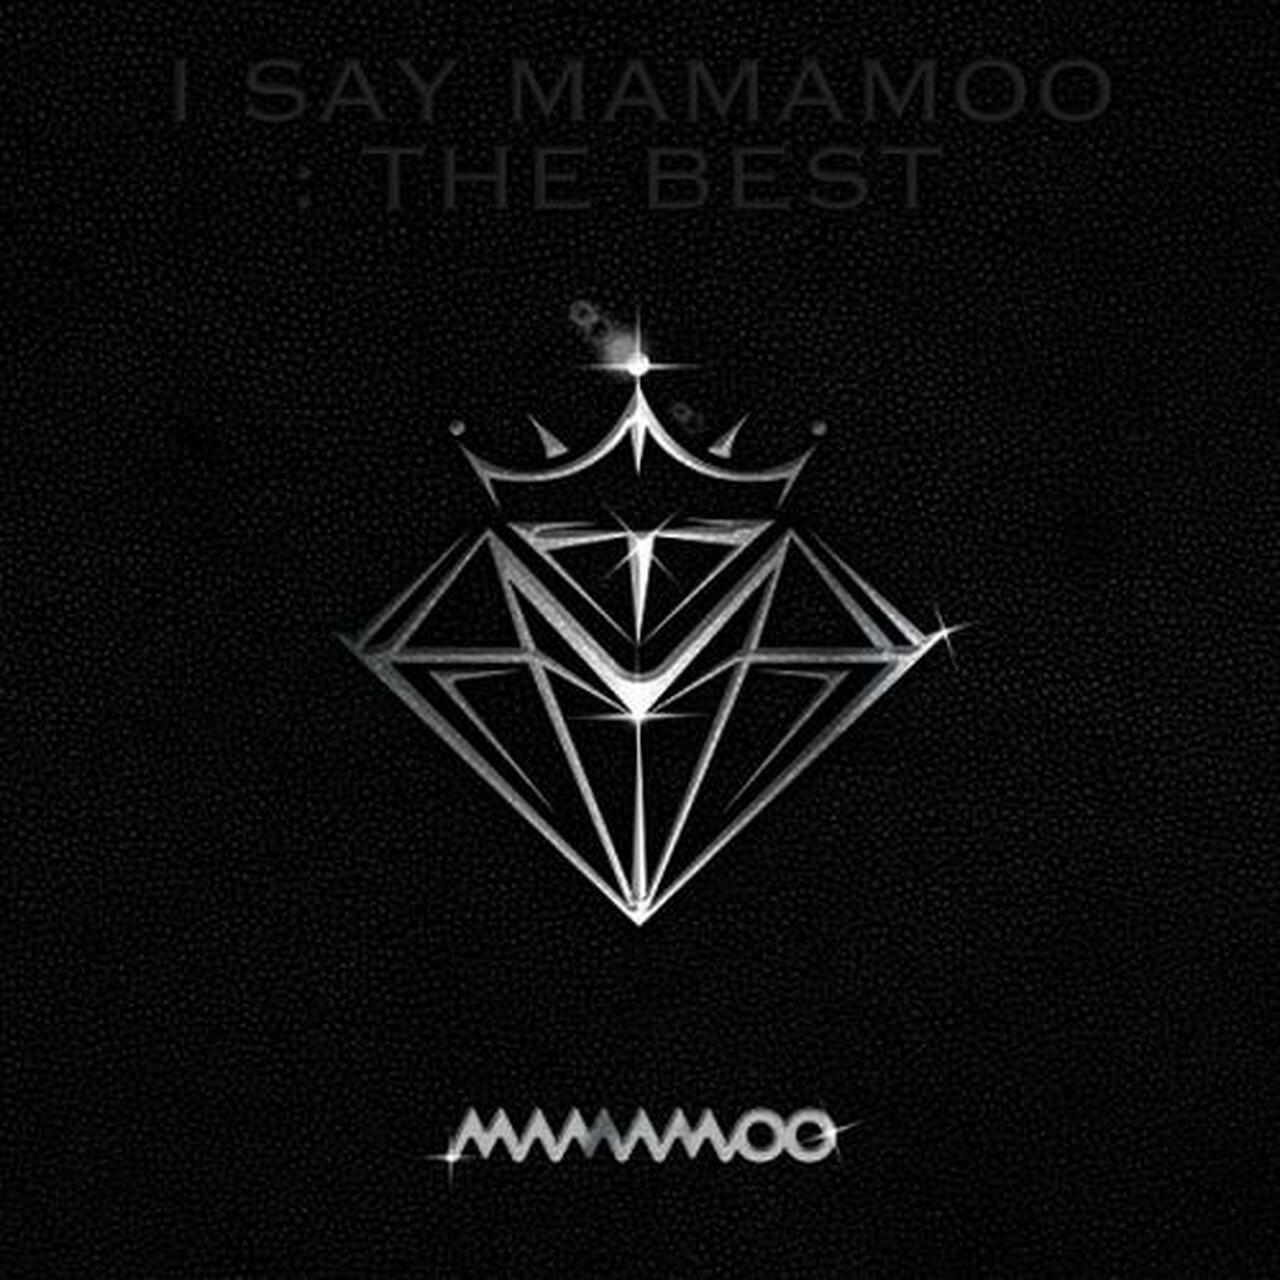 MAMAMOO - [I SAY MAMAMOO : THE BEST] (2CD) – Kpop Omo